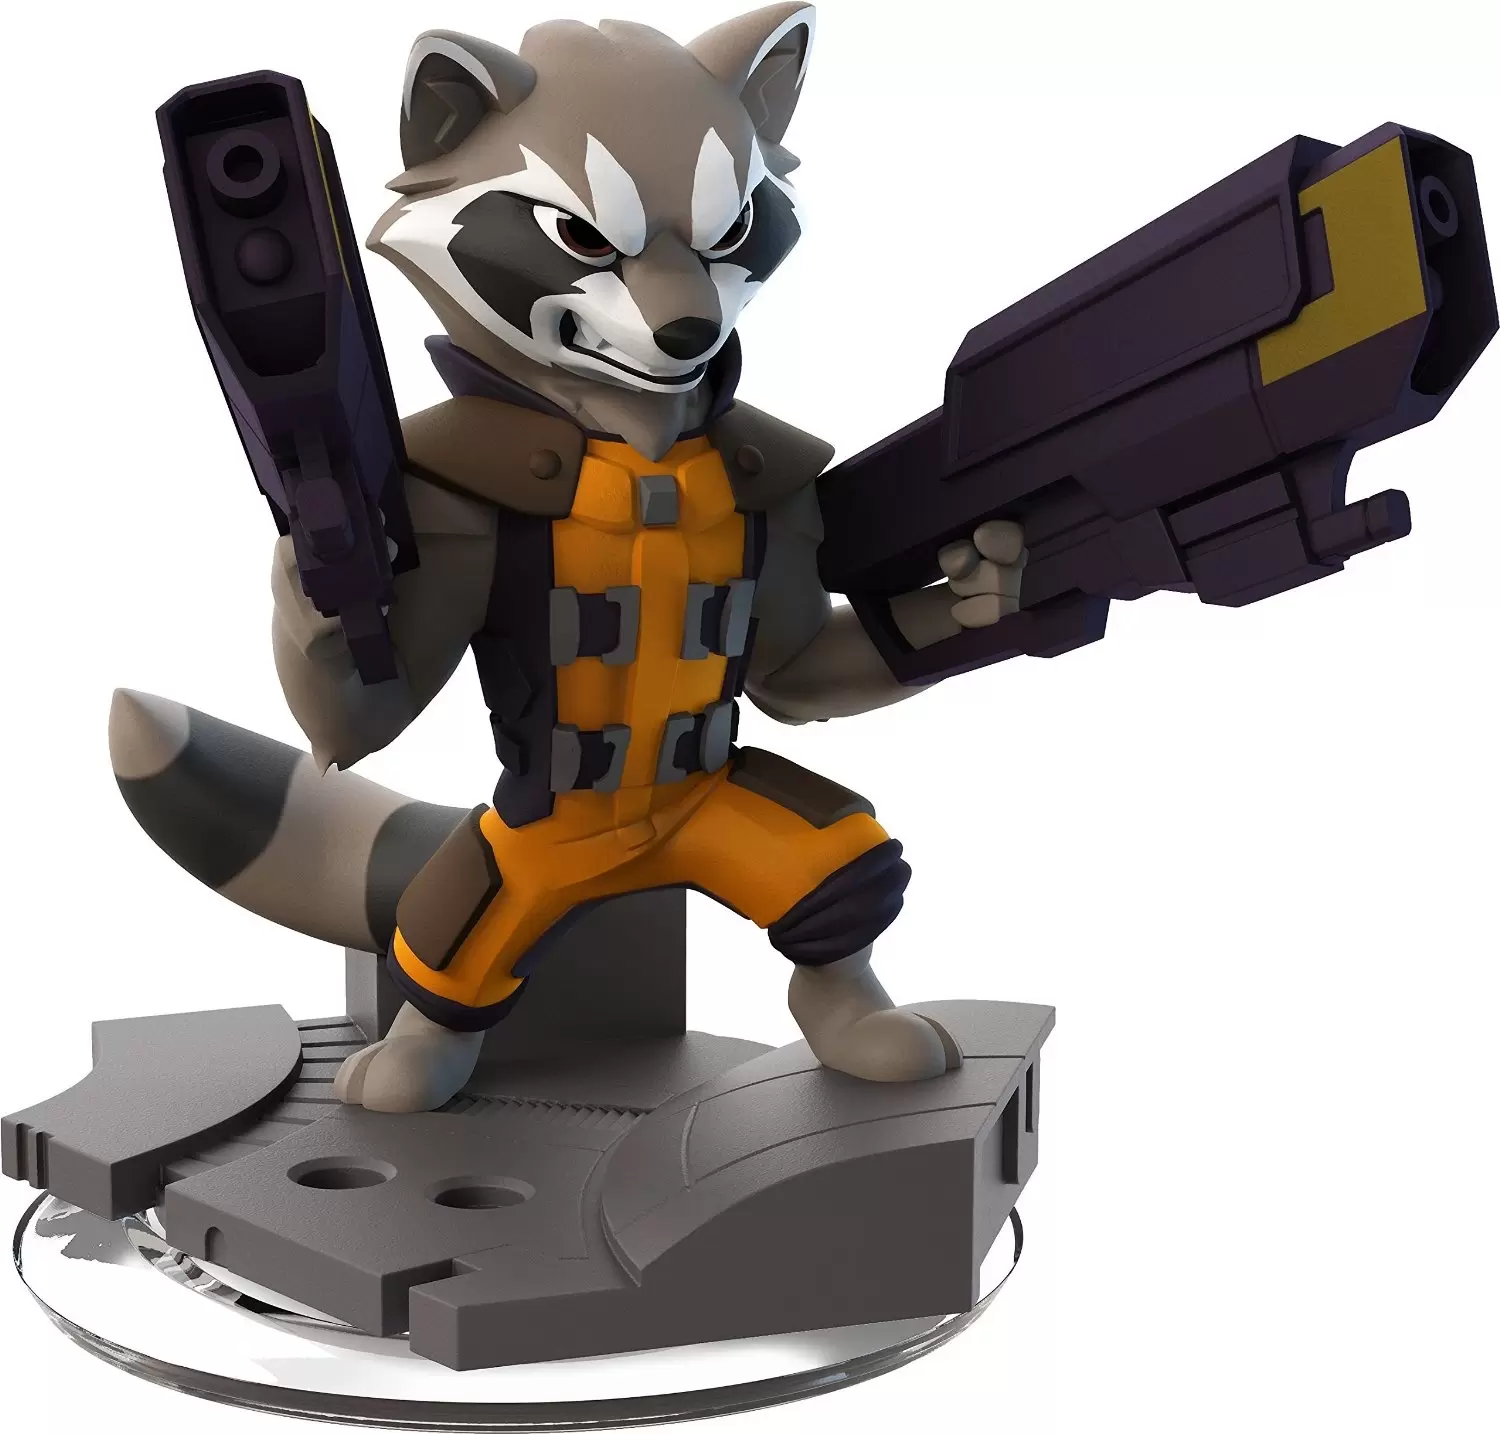 Disney Infinity Action figures - Rocket Raccoon